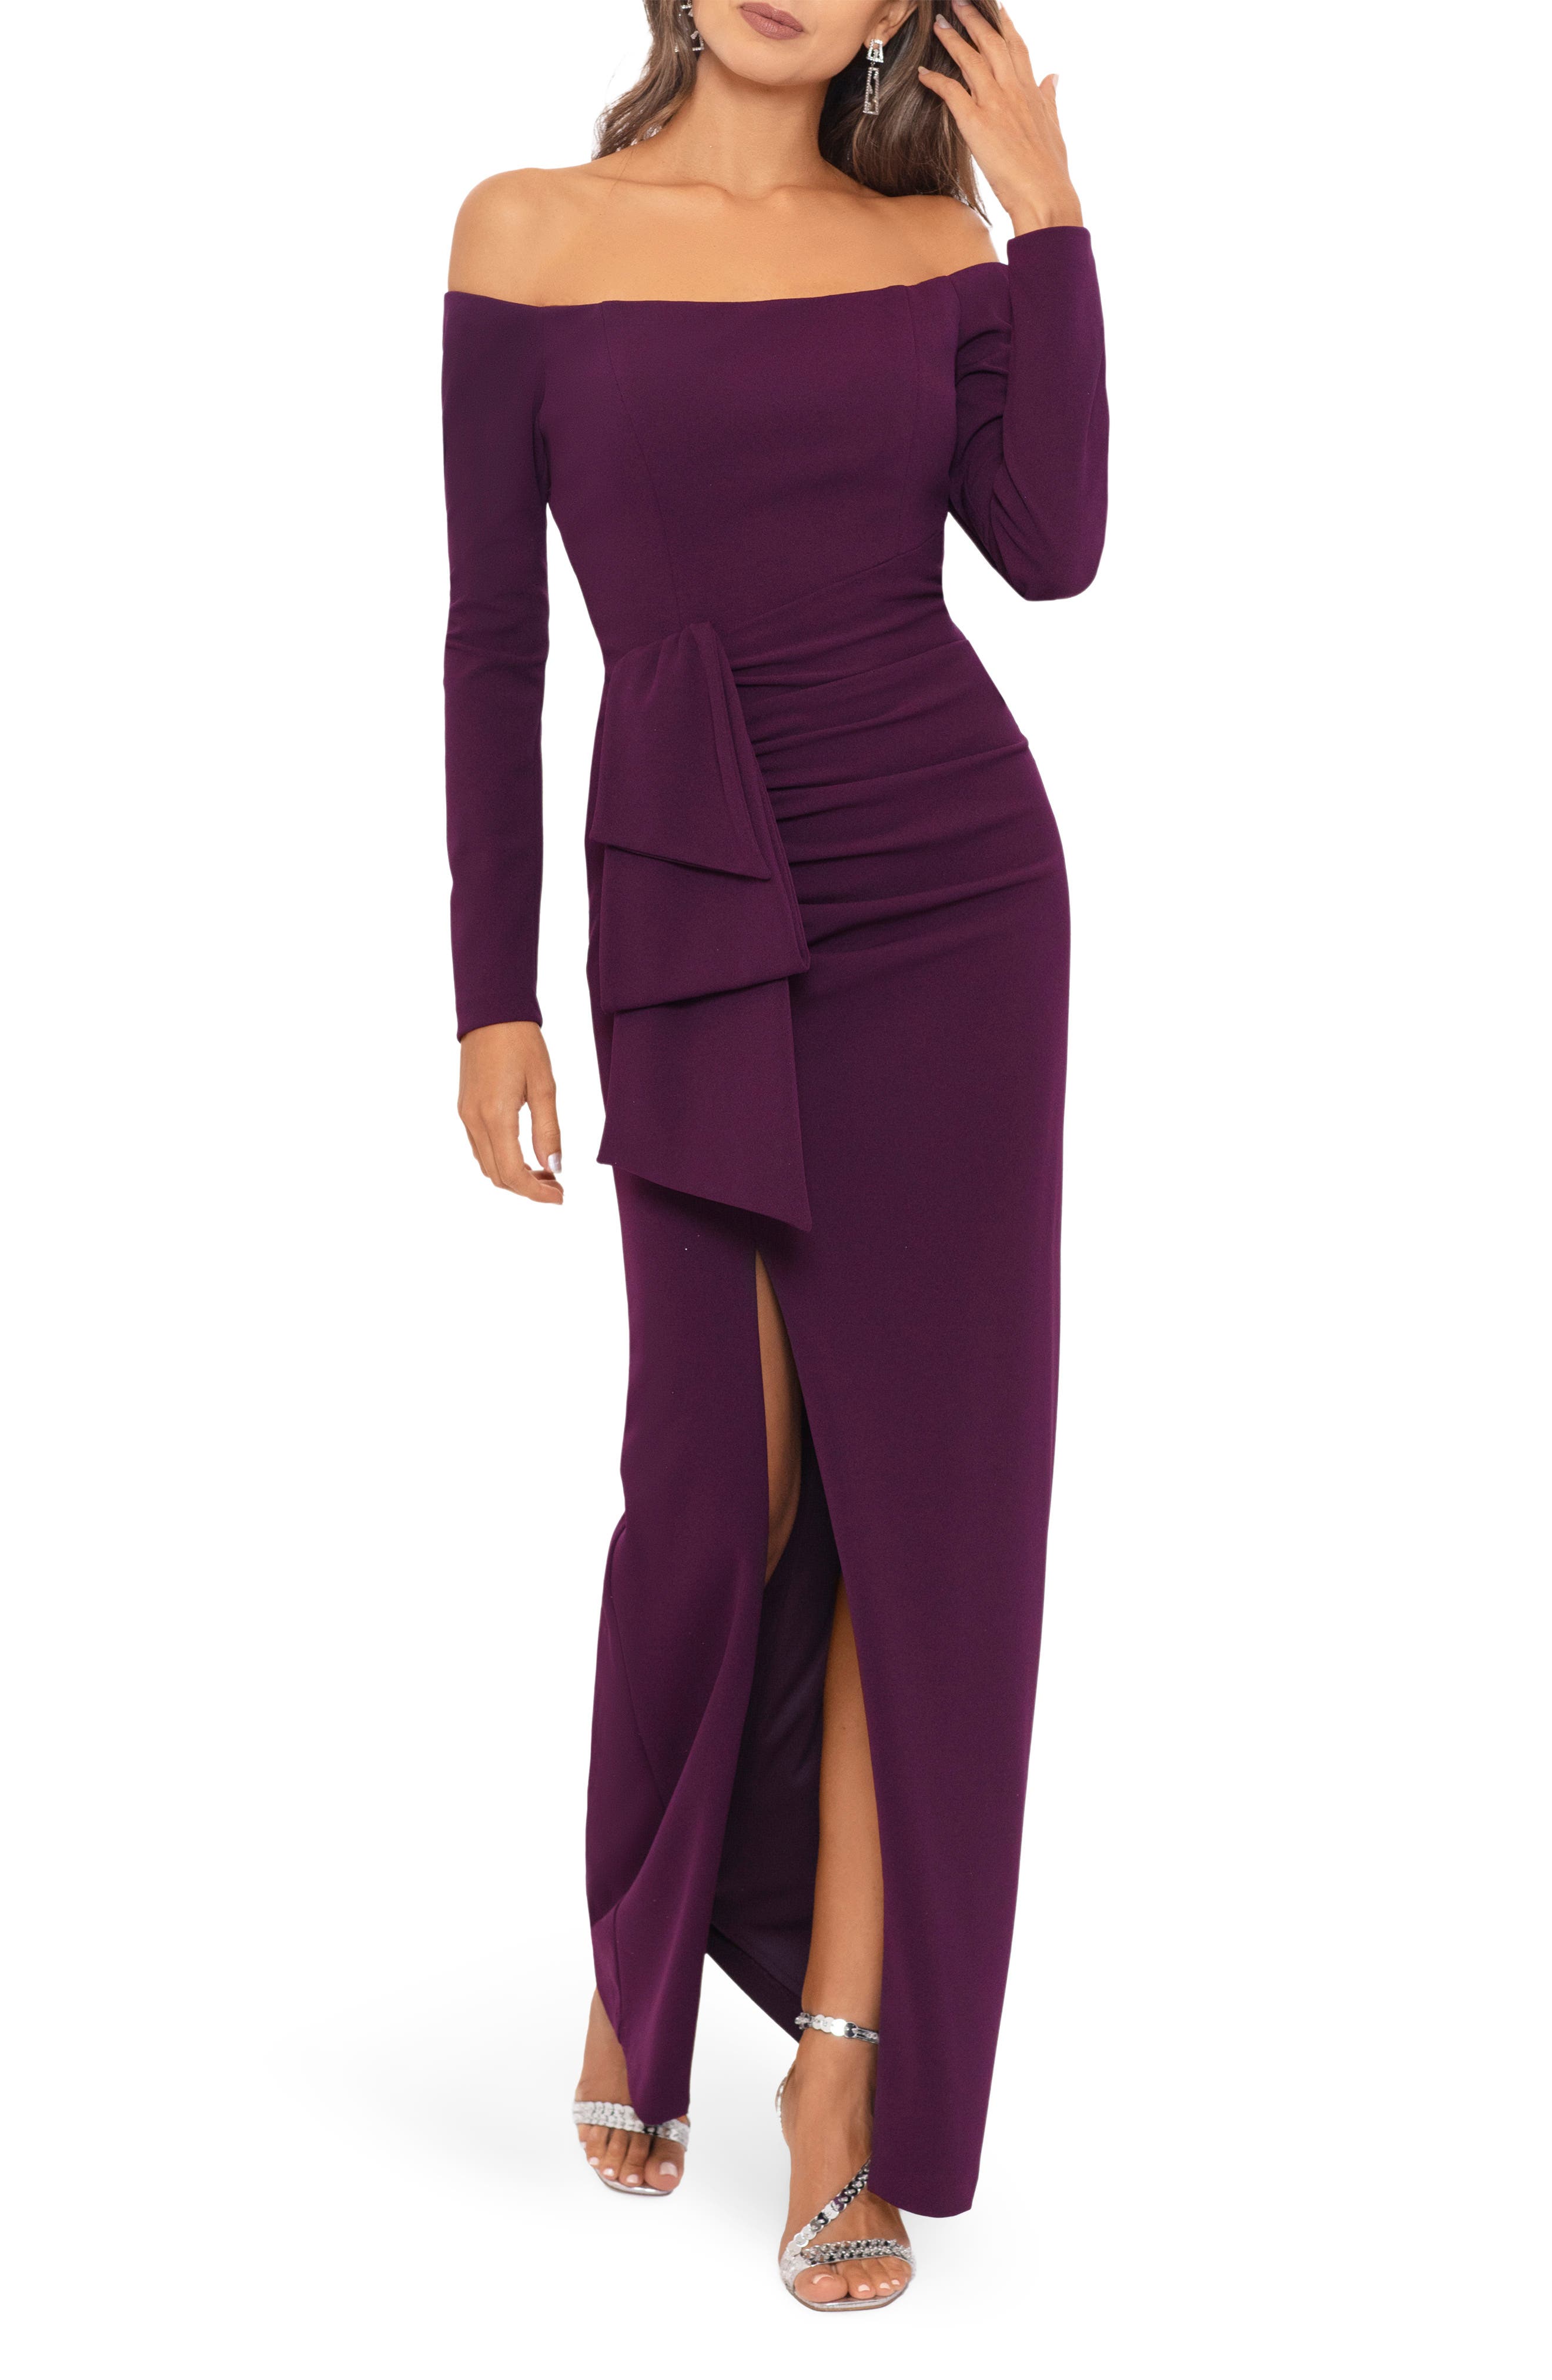 purple maxi dress